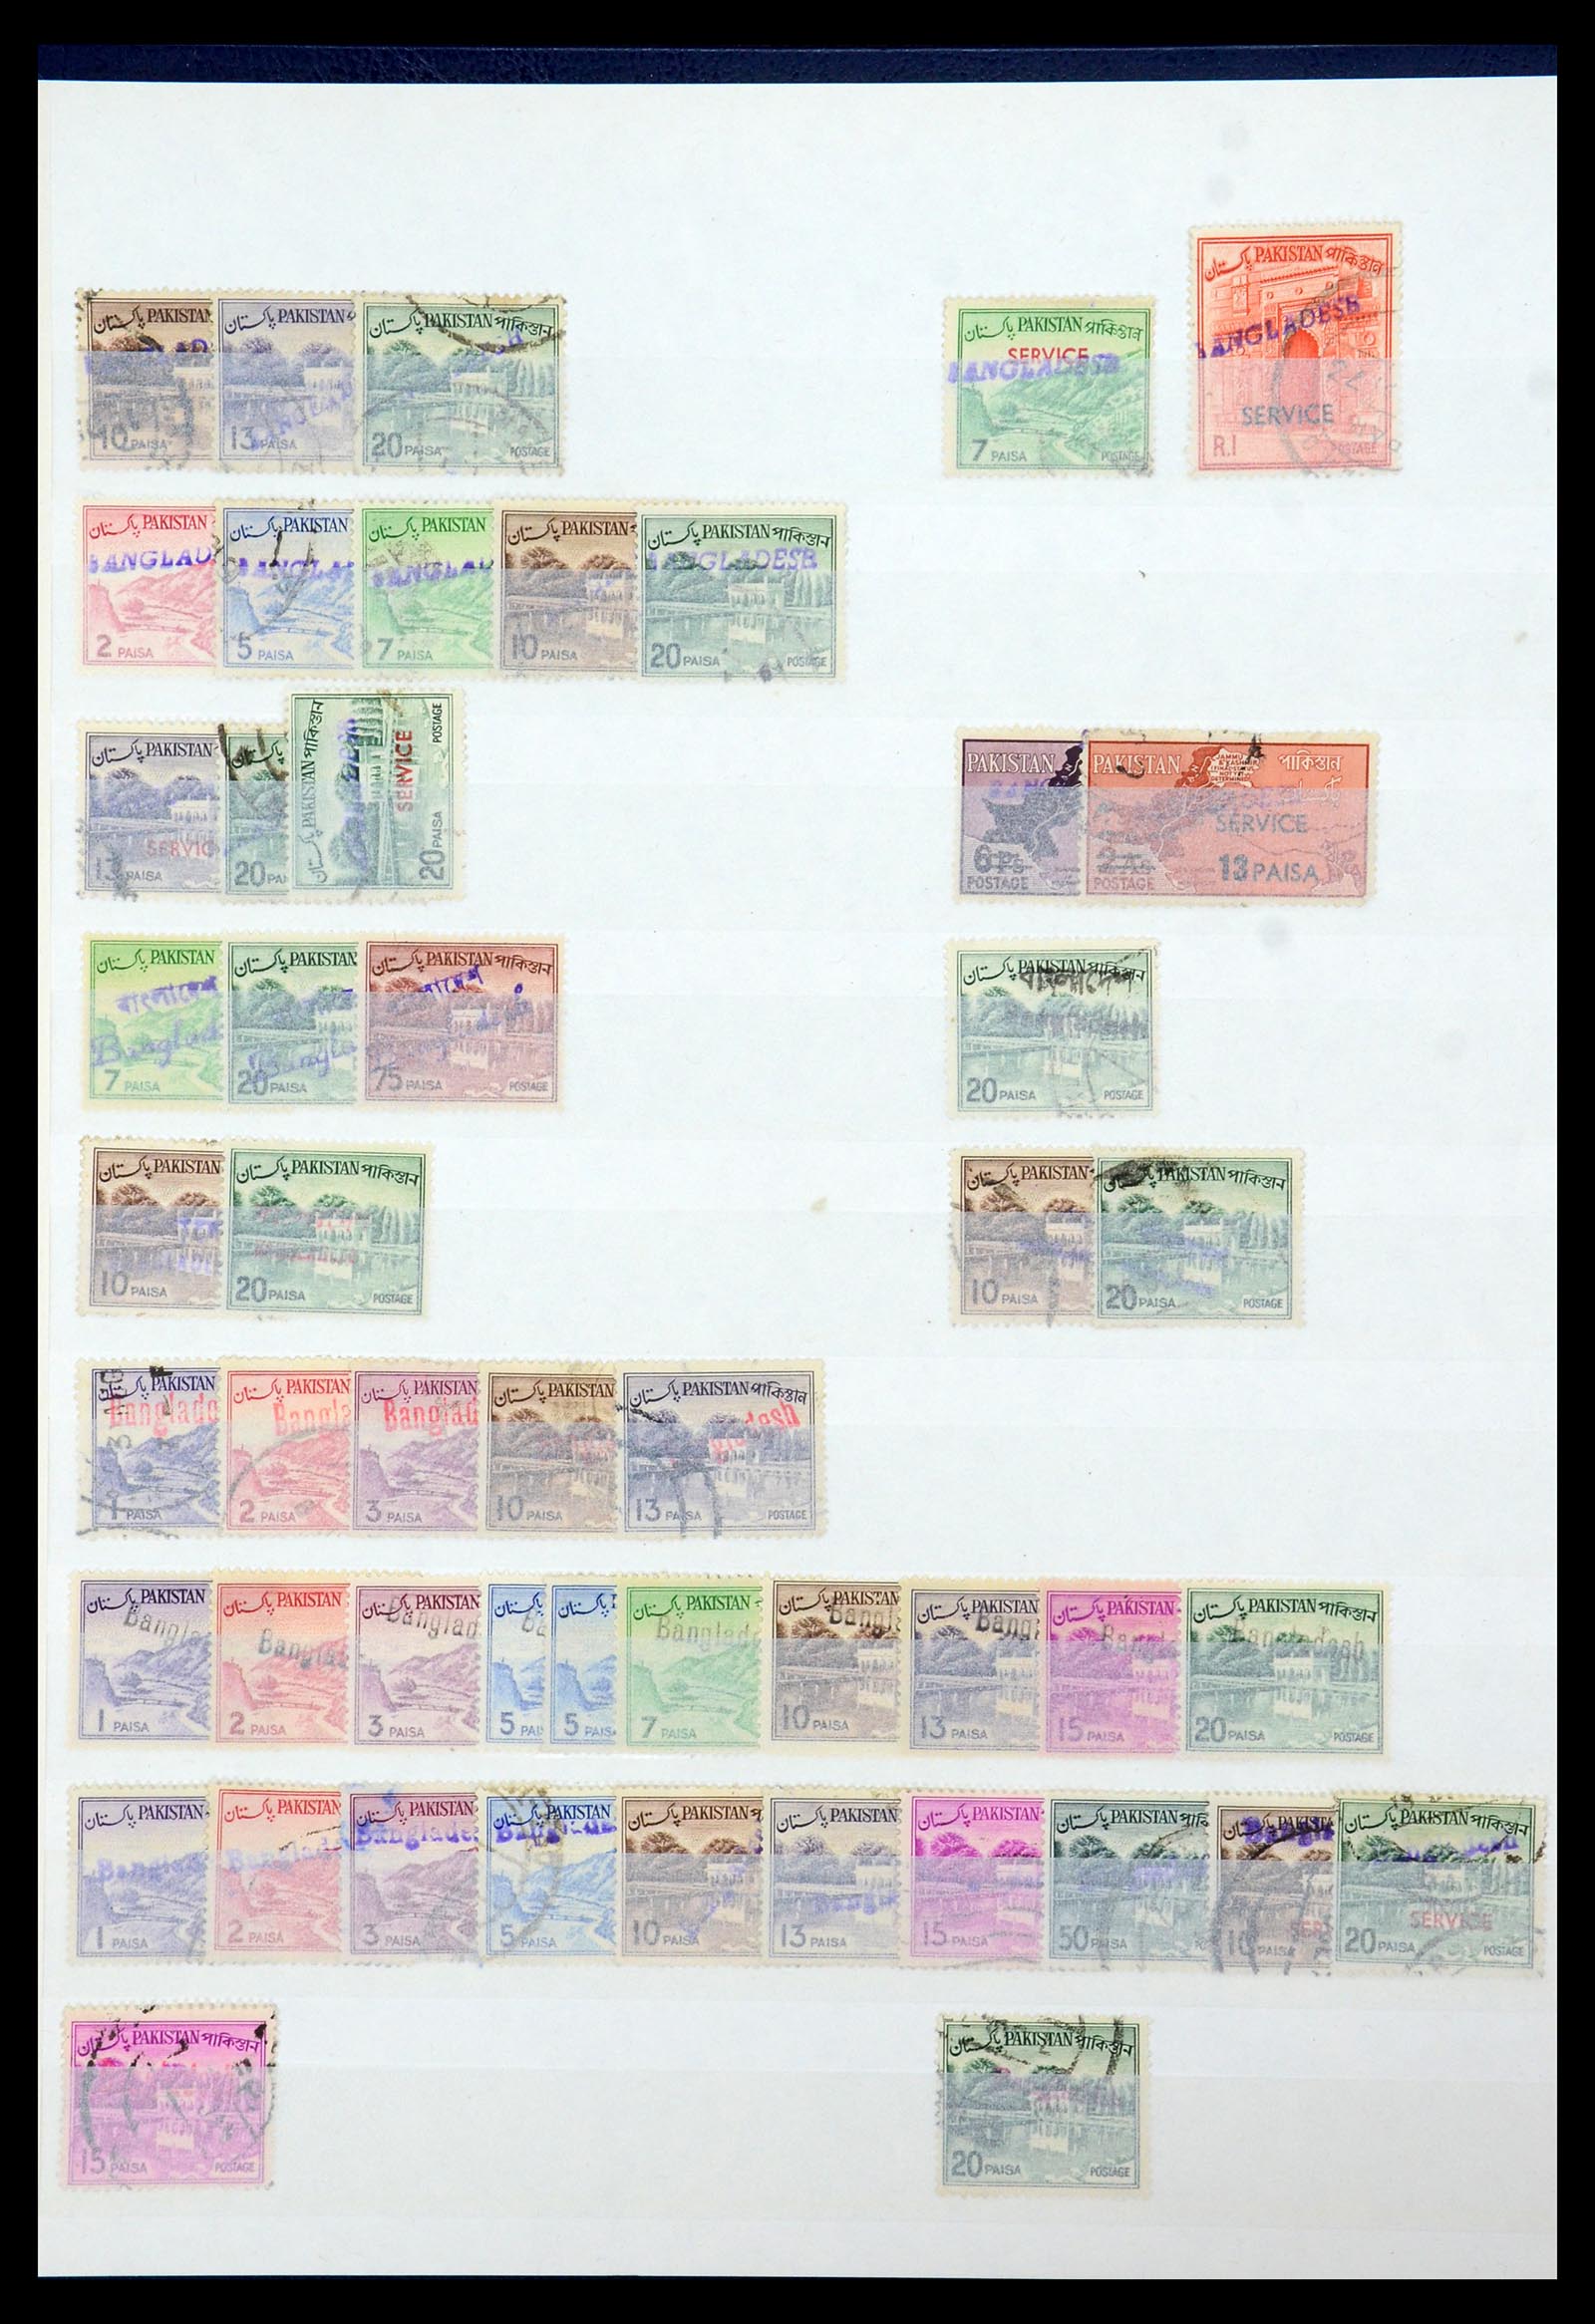 35301 002 - Stamp Collection 35301 Bangladesh 1971-1992.